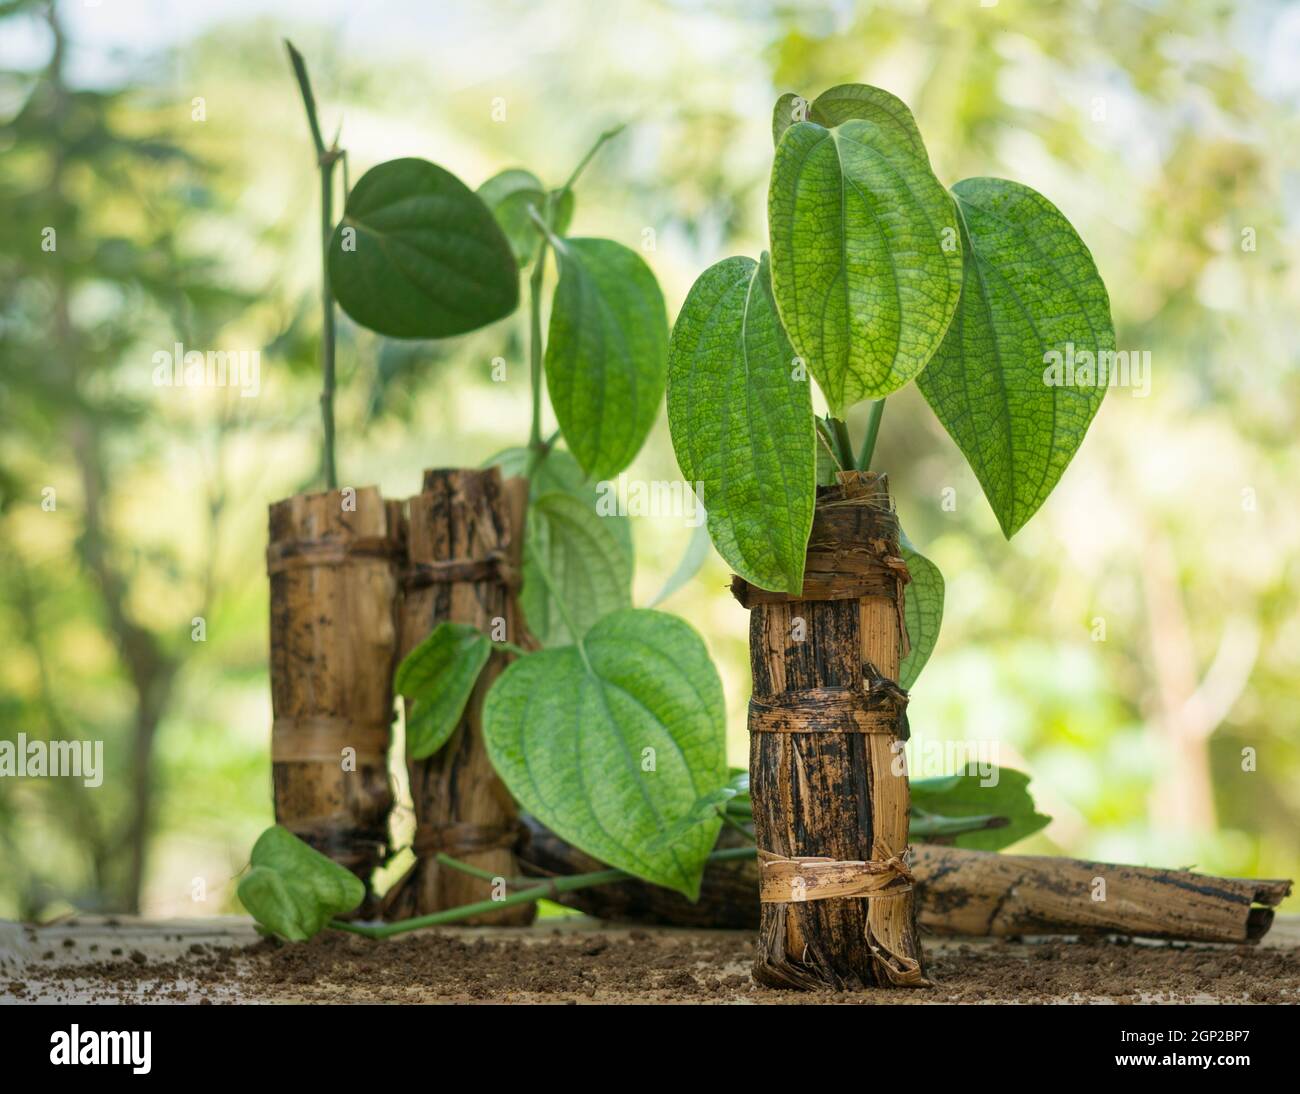 jeunes plants de poivre noir, piper nigrum poussant dans des pots de feuilles de banane biodégradables naturels dans le jardin Banque D'Images